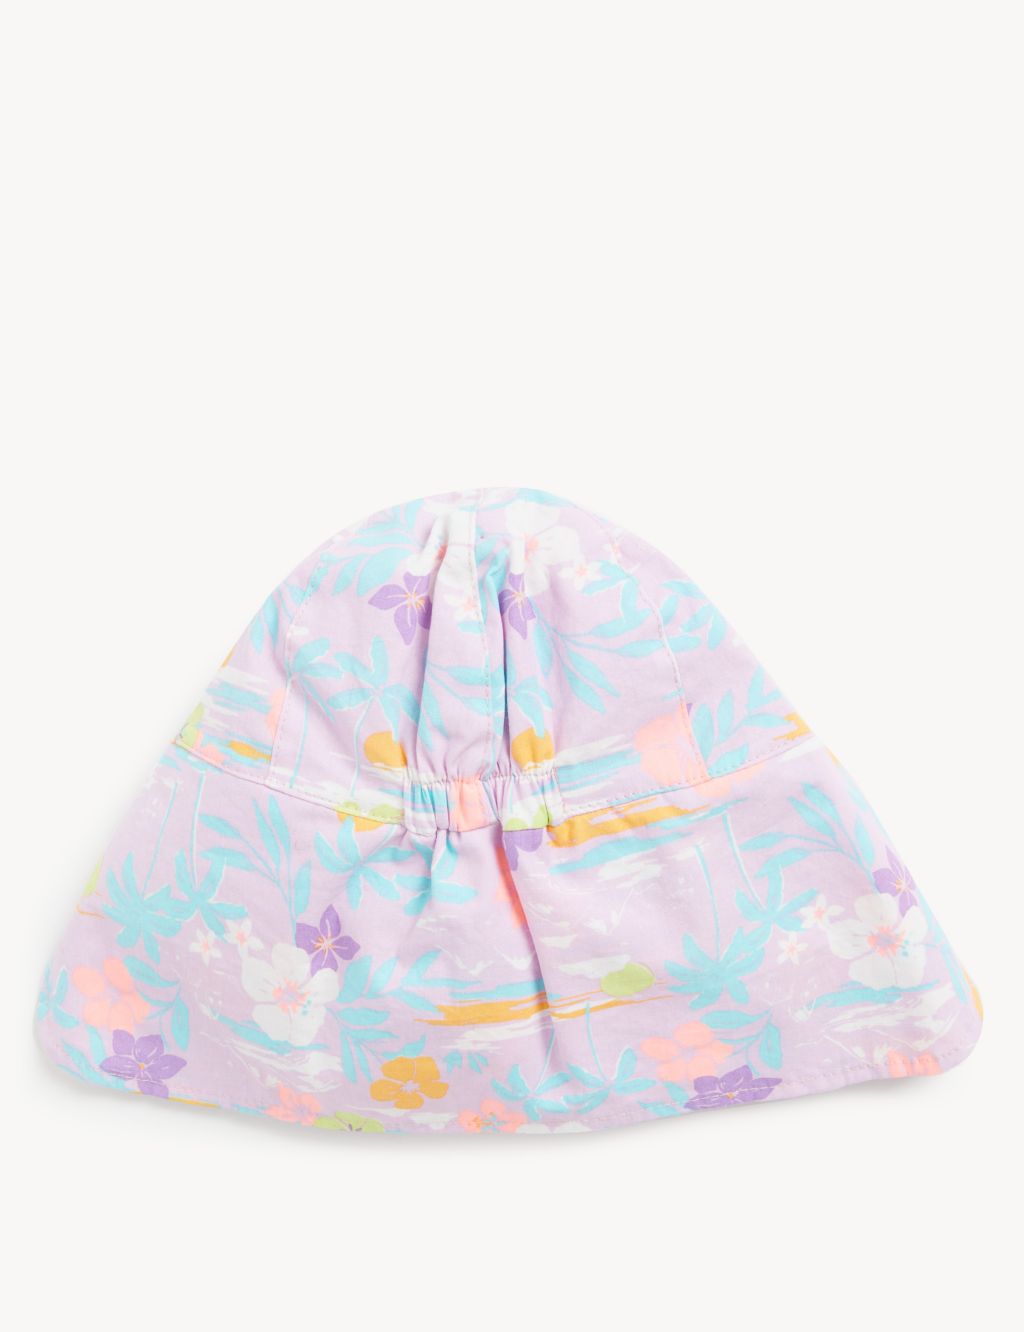 Kids' Pure Cotton Floral Sun Hat (0-6 Yrs) image 2